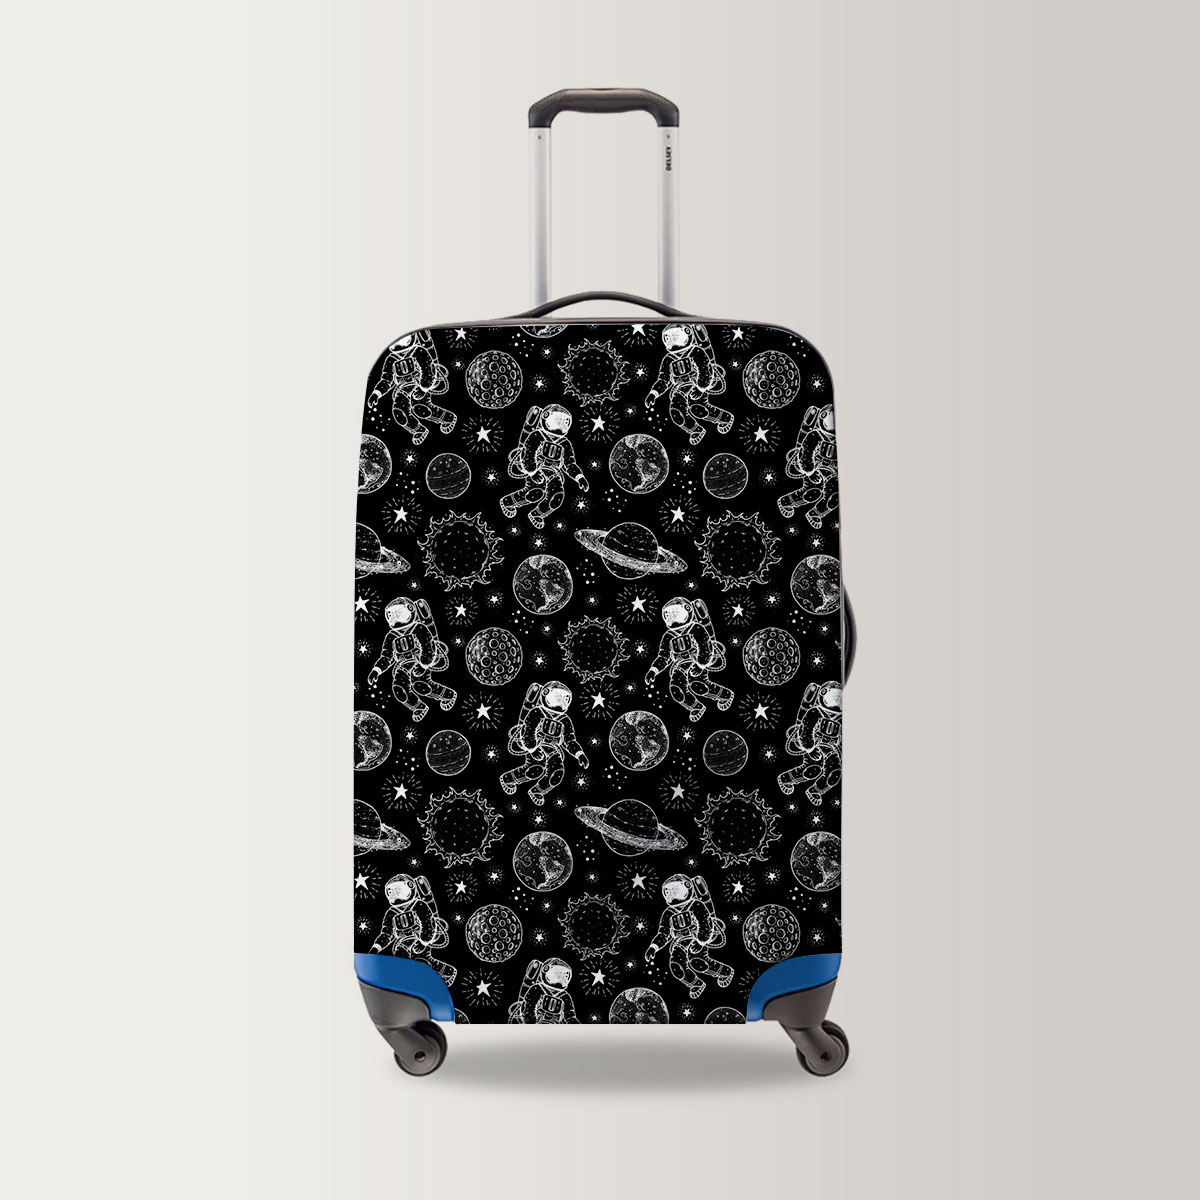 Galaxy Astronaut Luggage Bag